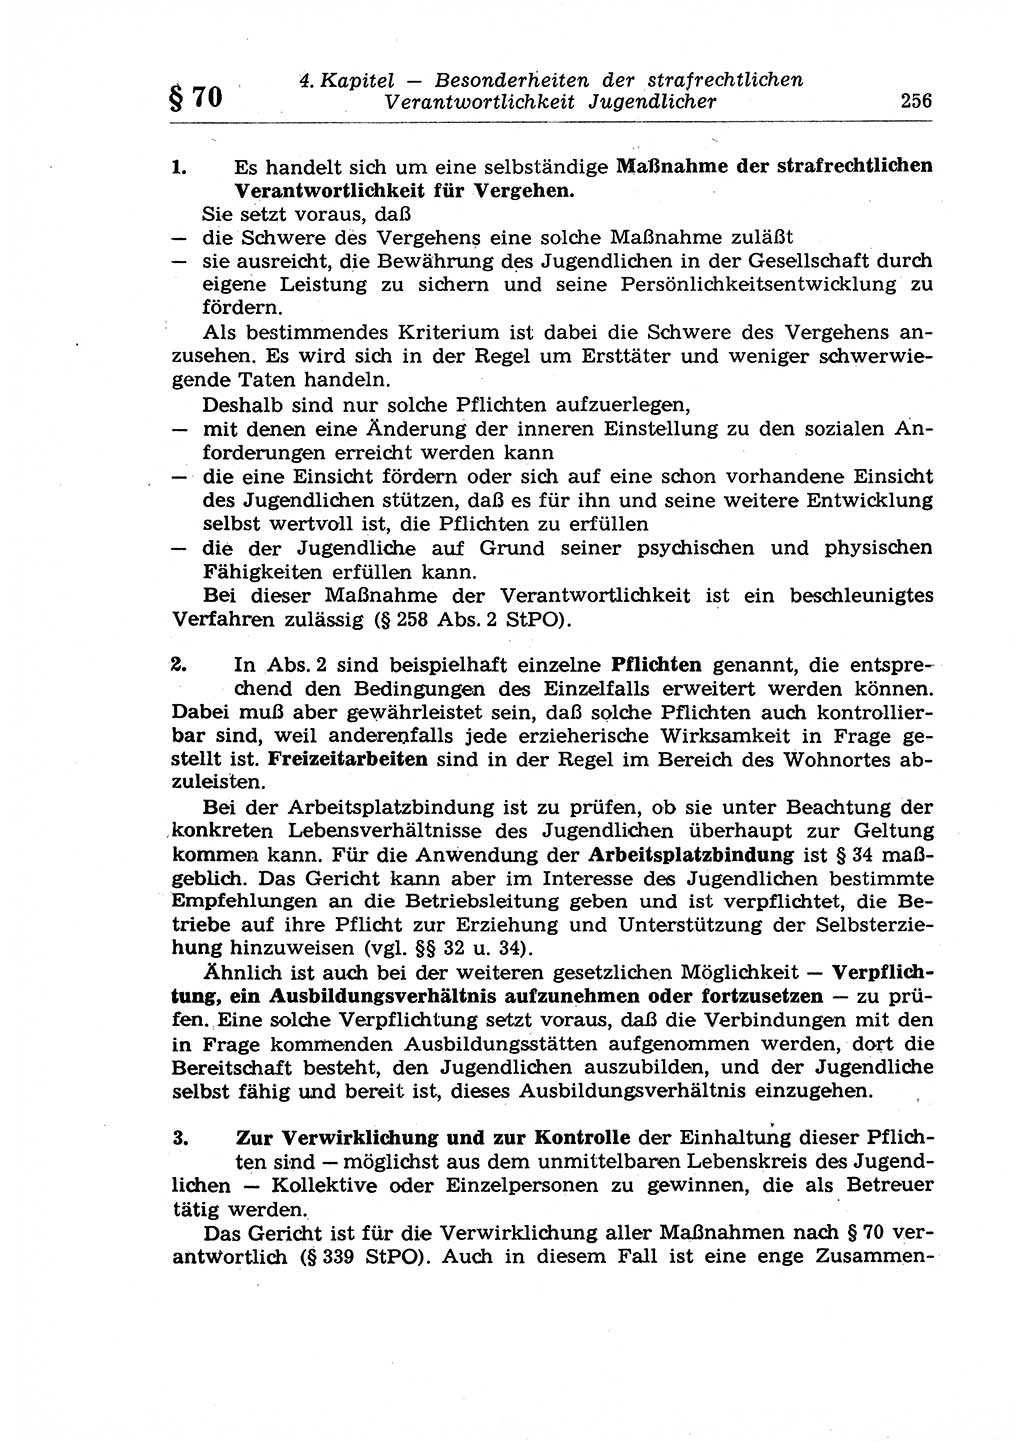 Strafrecht der Deutschen Demokratischen Republik (DDR), Lehrkommentar zum Strafgesetzbuch (StGB), Allgemeiner Teil 1970, Seite 256 (Strafr. DDR Lehrkomm. StGB AT 1970, S. 256)